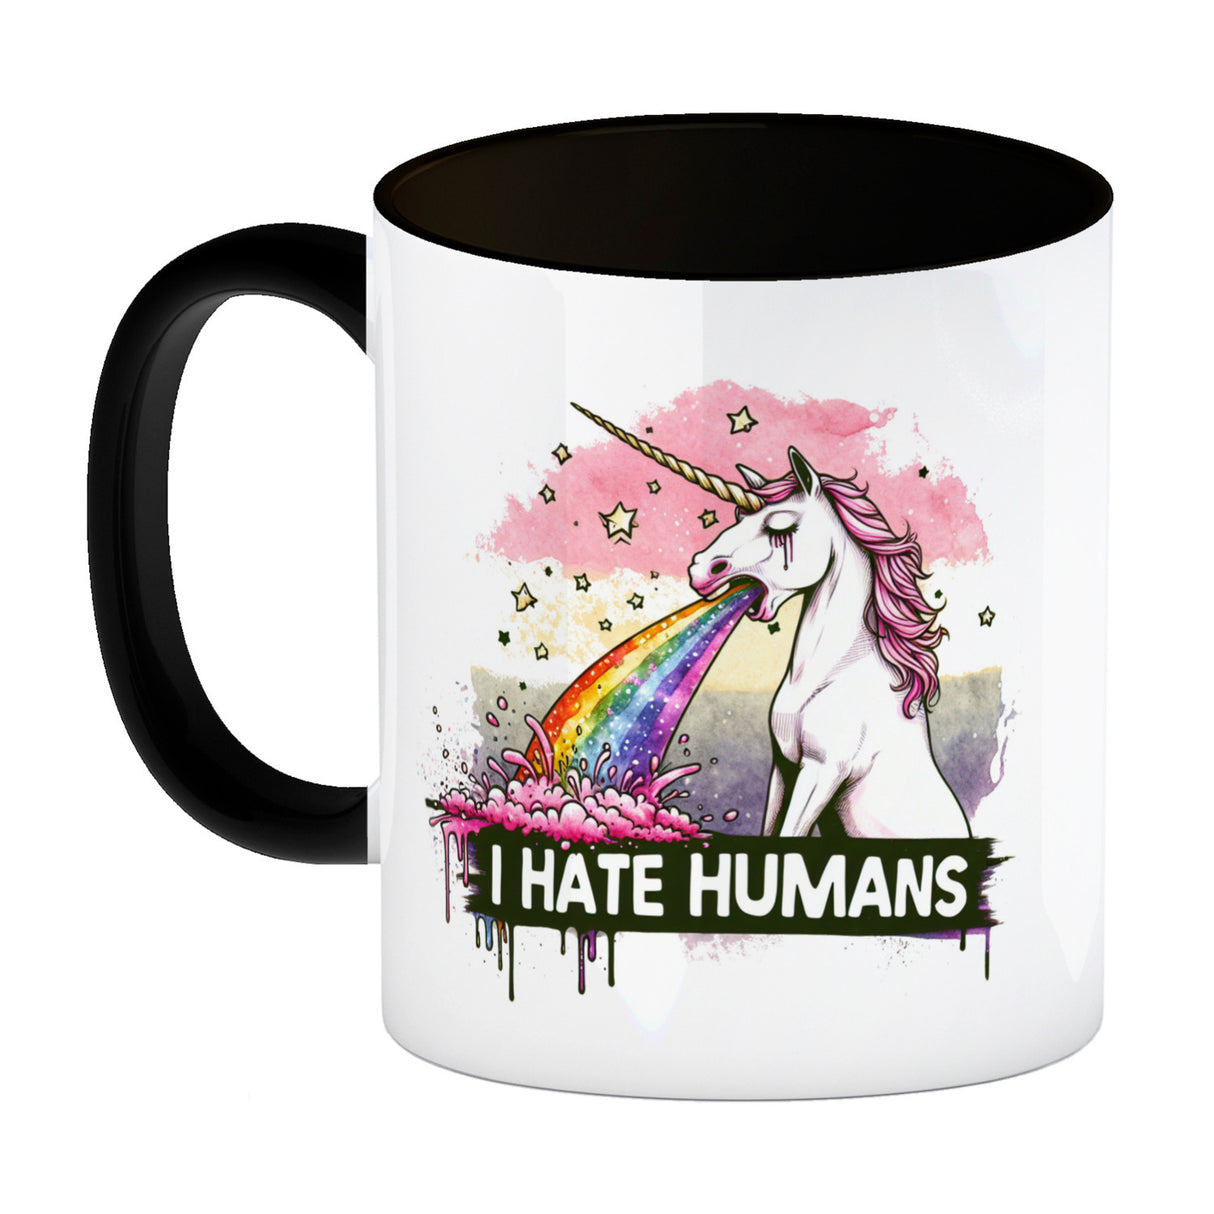 Einhorn kotzt Regenbogen Kaffeebecher mit Spruch I hate Humans